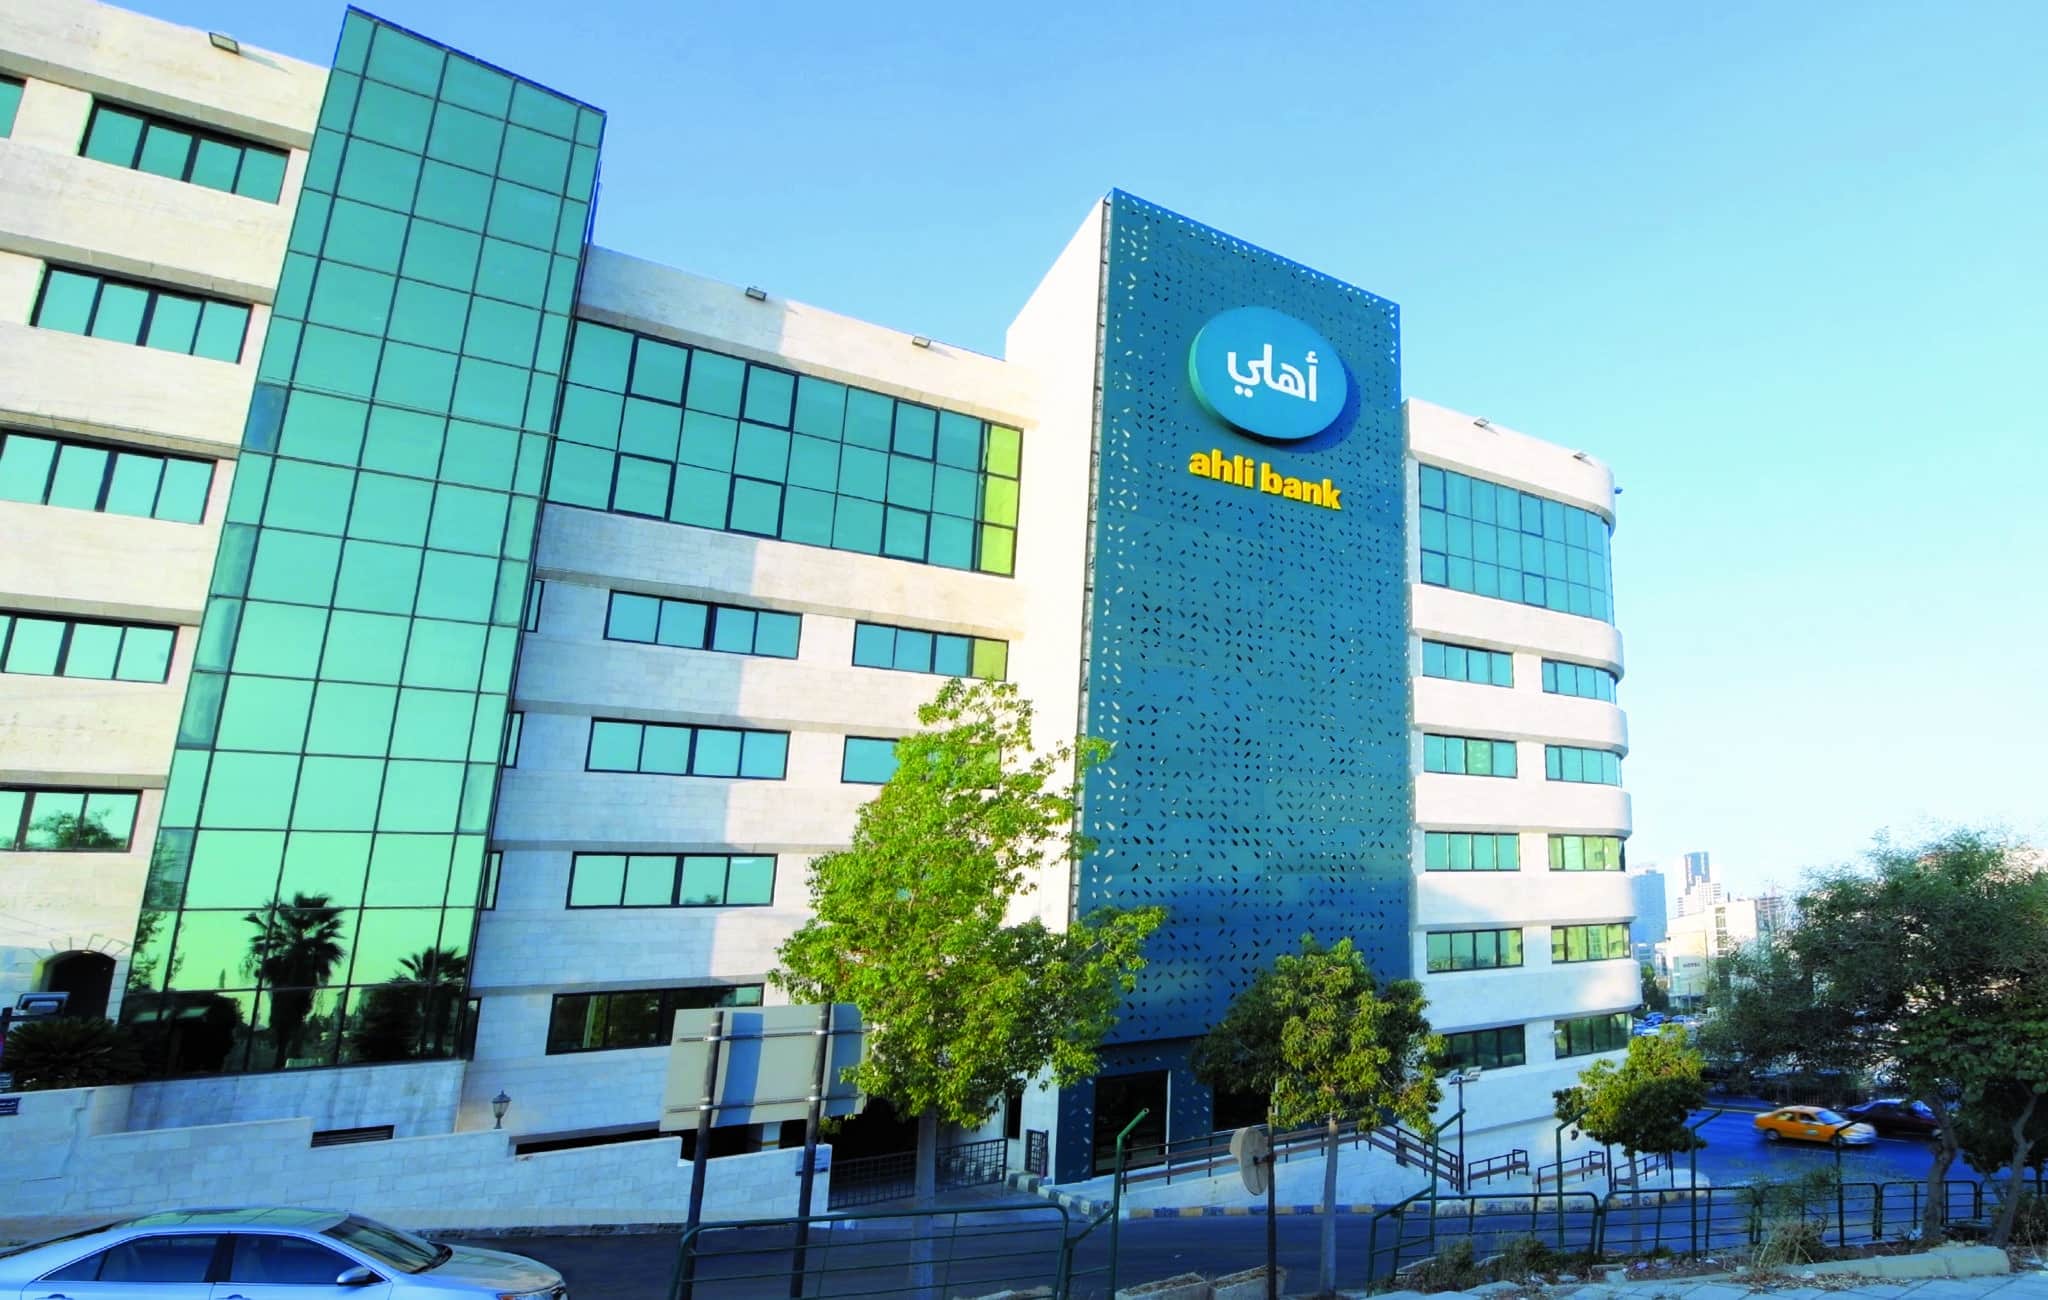 البنك الأهلي الأردني يطلق تطبيق “أهلي موبايل” للشركات الكبرى والمتوسطة والصغرى